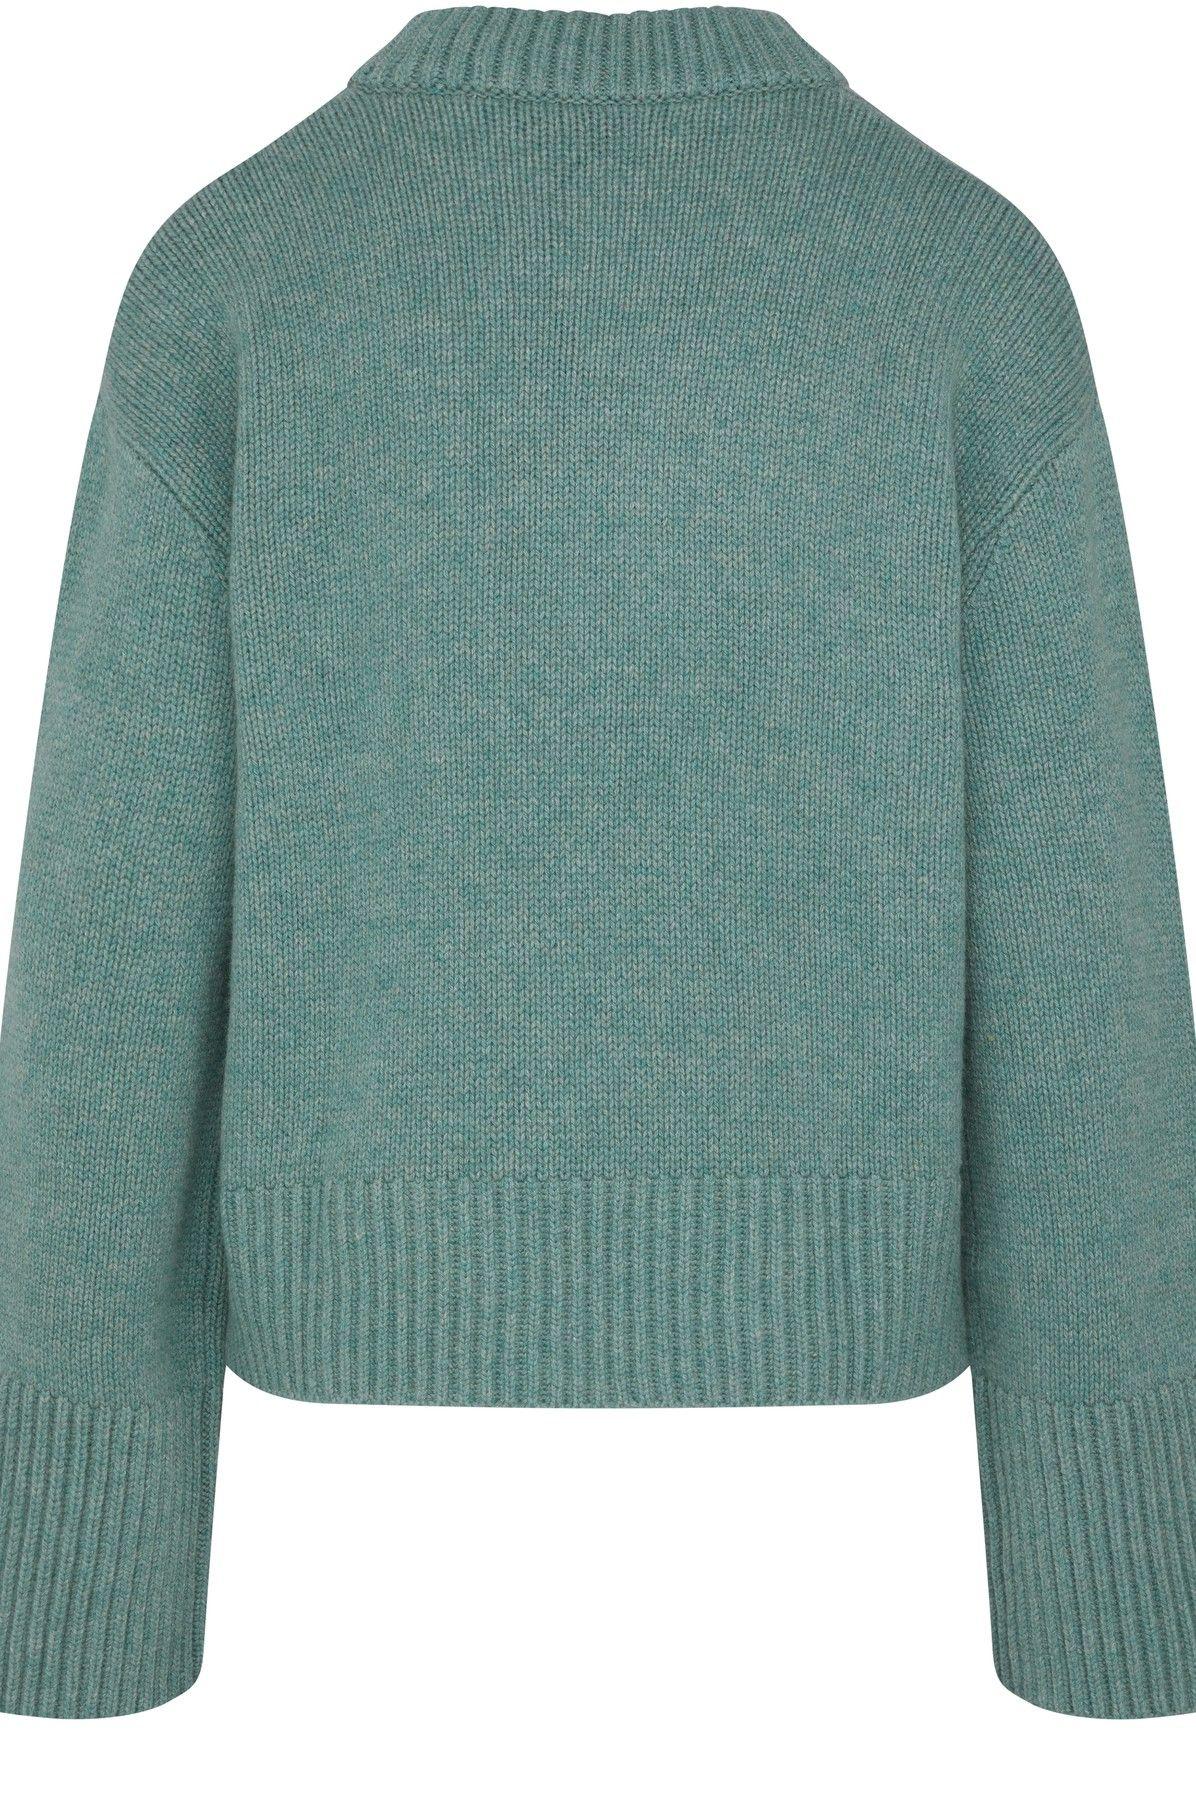 Lisa Yang Sony Sweater in Green | Lyst